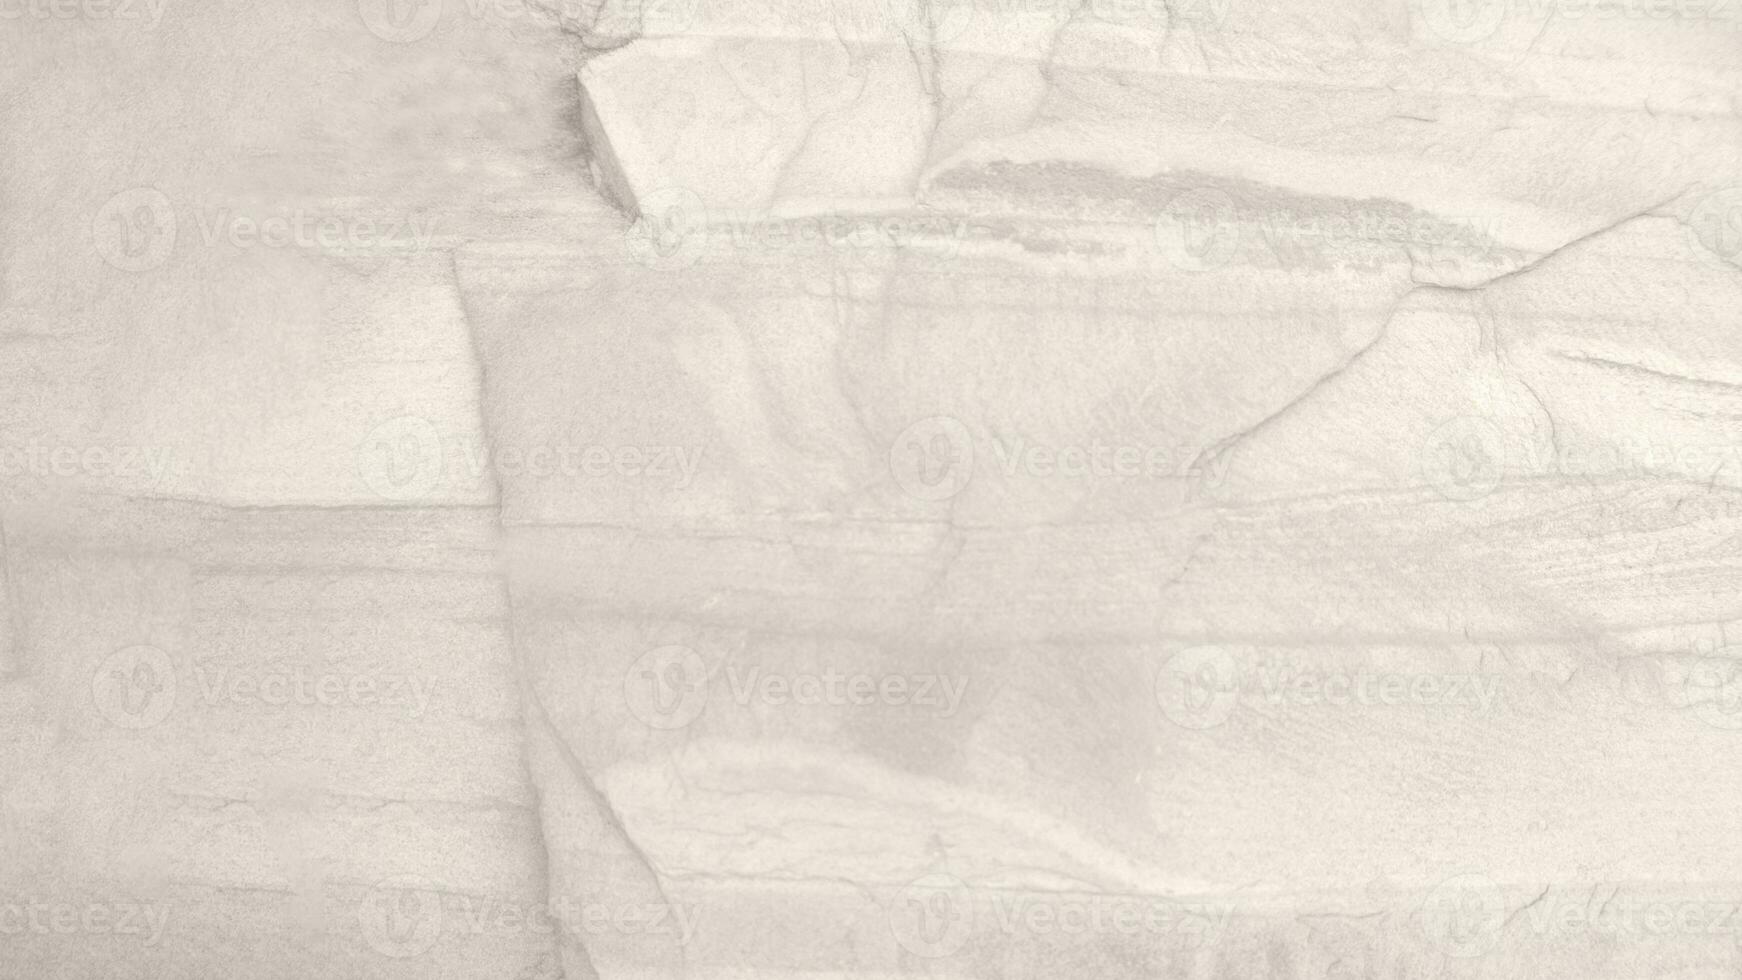 Oberfläche der weißen wärmenden Steinstruktur rauer, grau-weißer Ton. Verwenden Sie dies für Hintergrundbilder oder Hintergrundbilder. Es gibt ein Leerzeichen für Text. foto